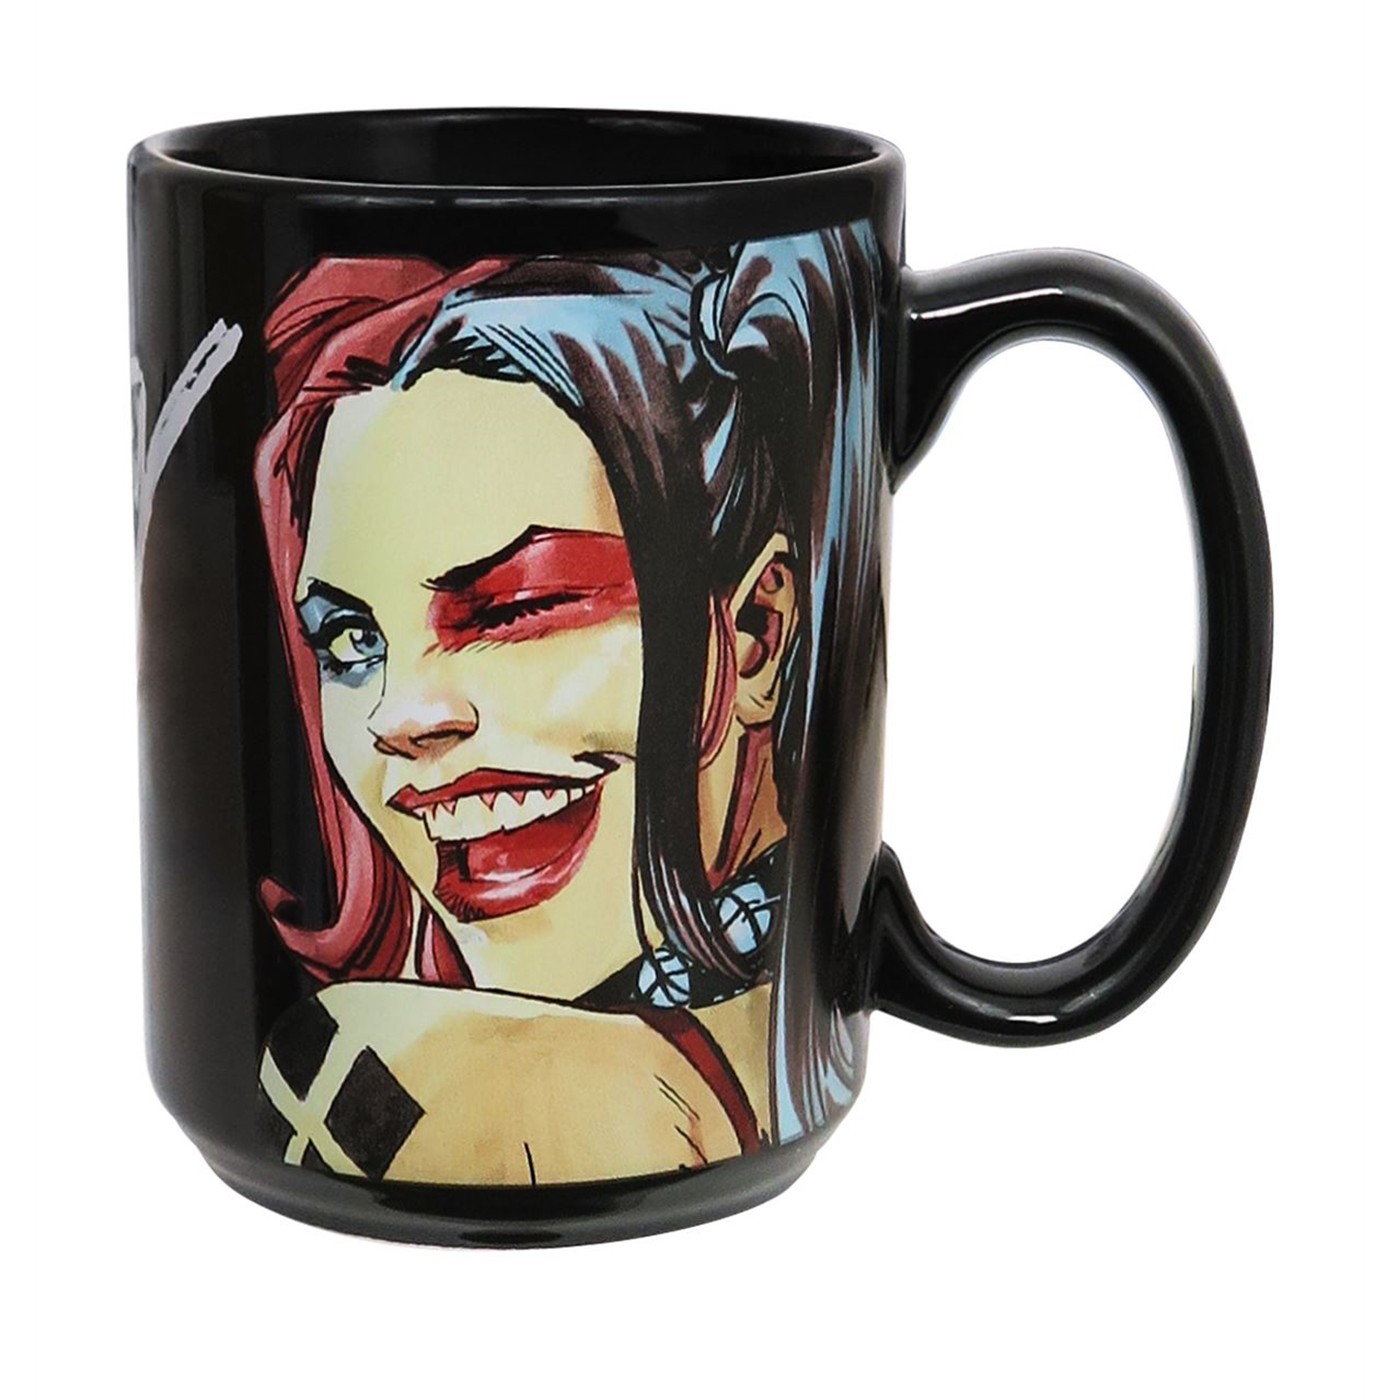 Harley Quinn Trust Me I'm Sane 15oz Ceramic Mug